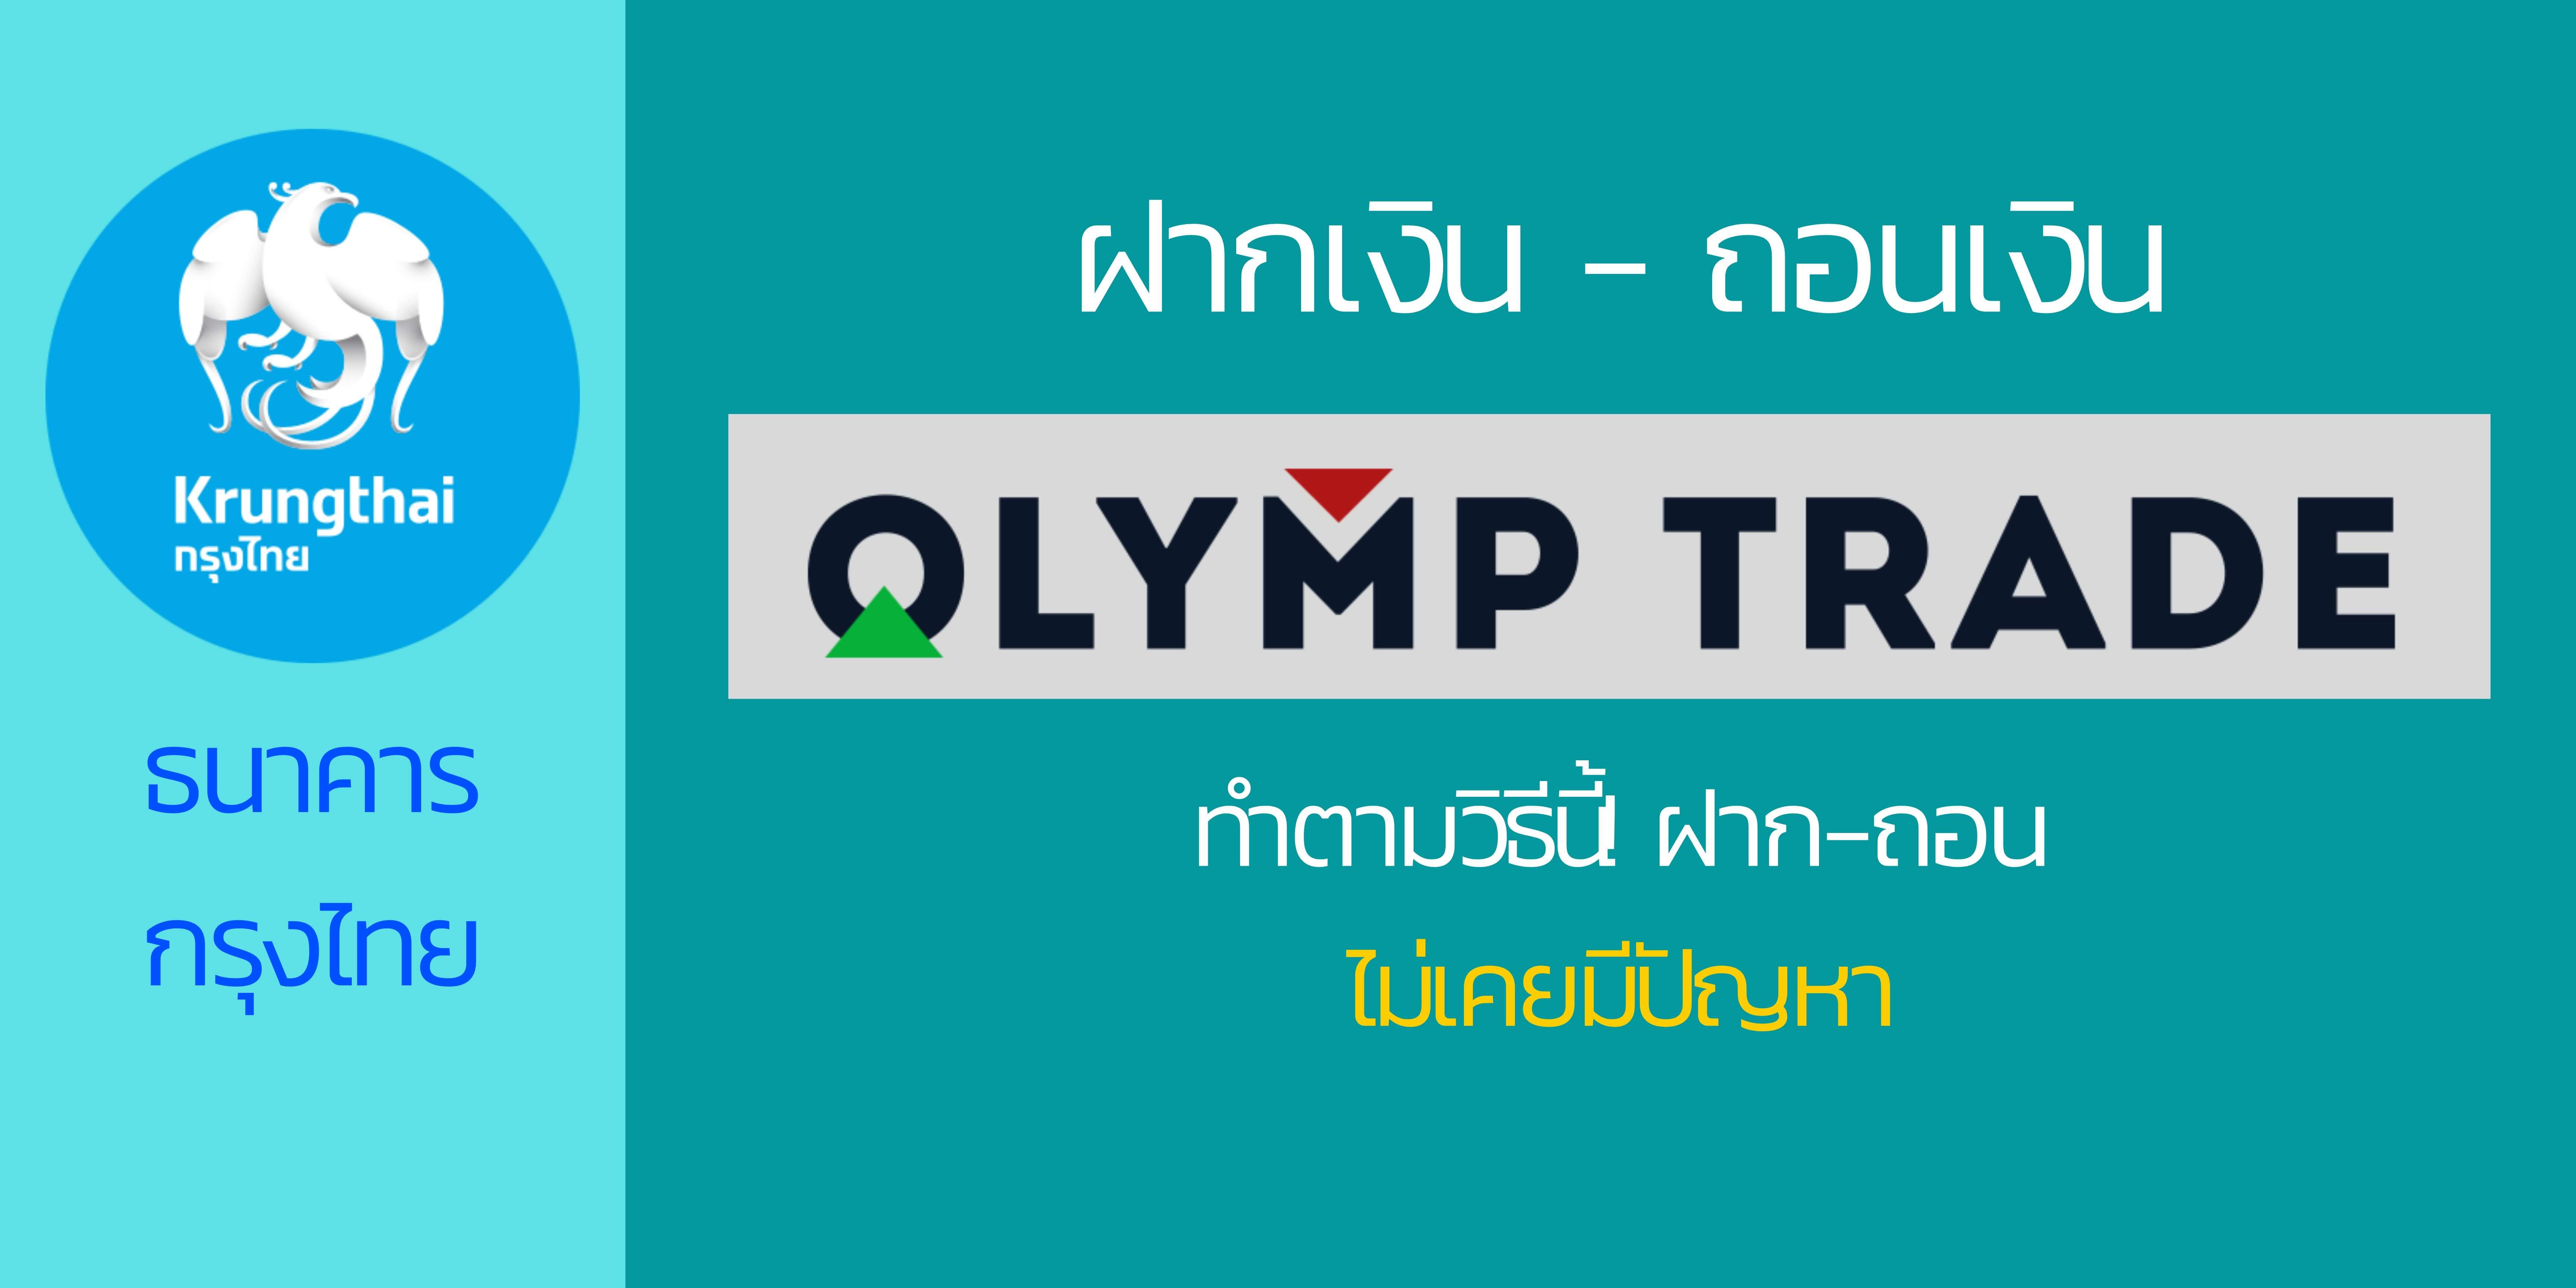 olymp trade ฝากเงินโดยใช้ธนาคารกรุงไทย